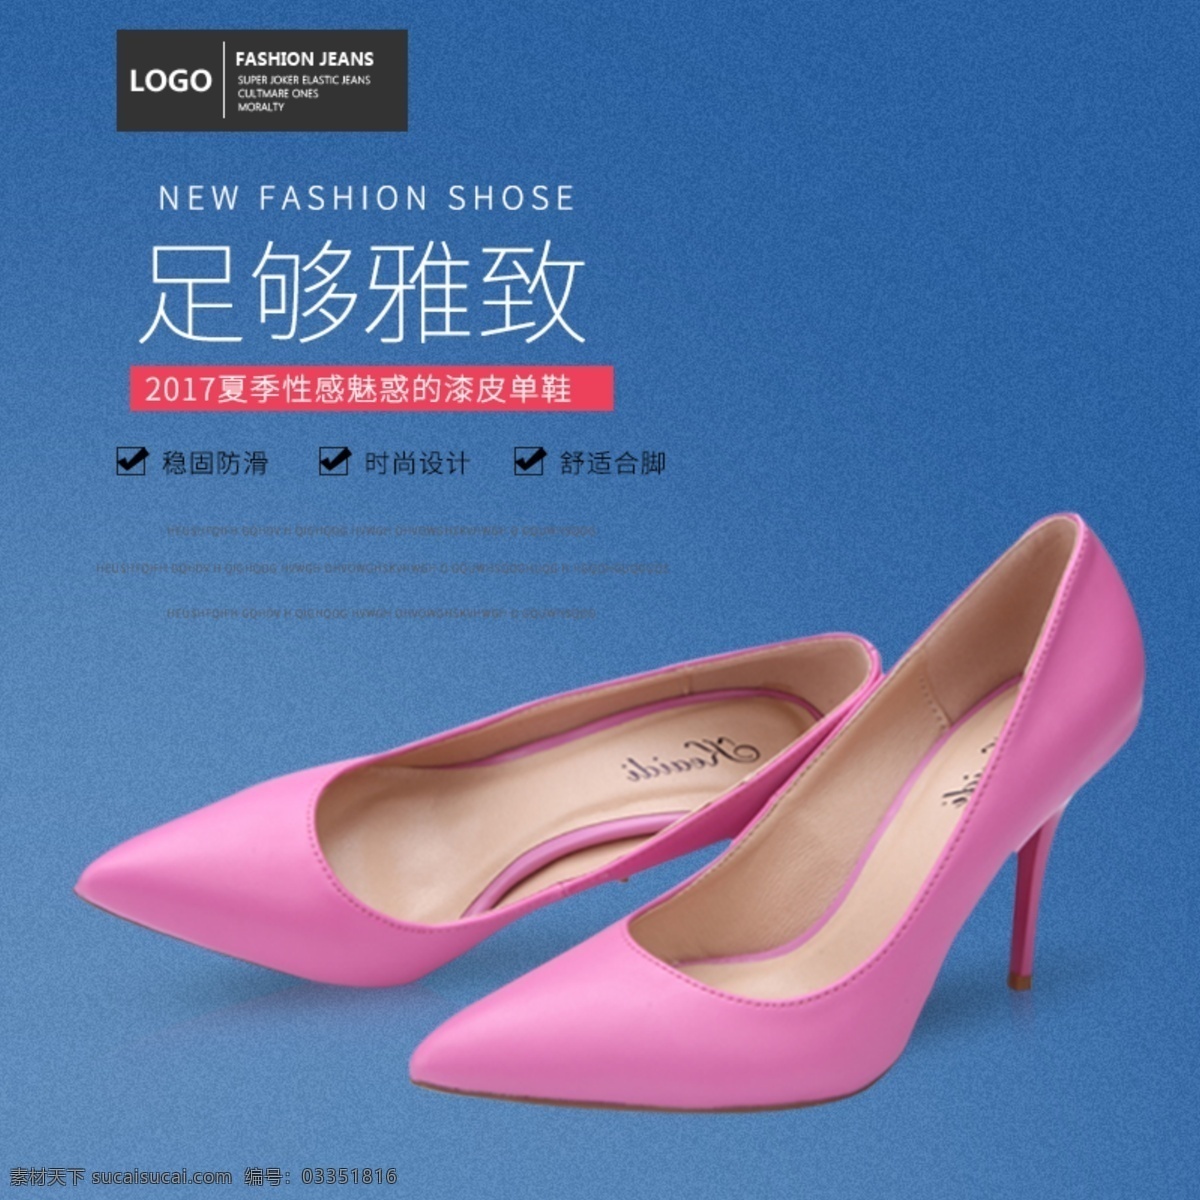 电商 淘宝 双十 二 女鞋 粉 紫色 高跟鞋 首页 促销海报 电商首页 简约风格 蓝色 鞋业海报